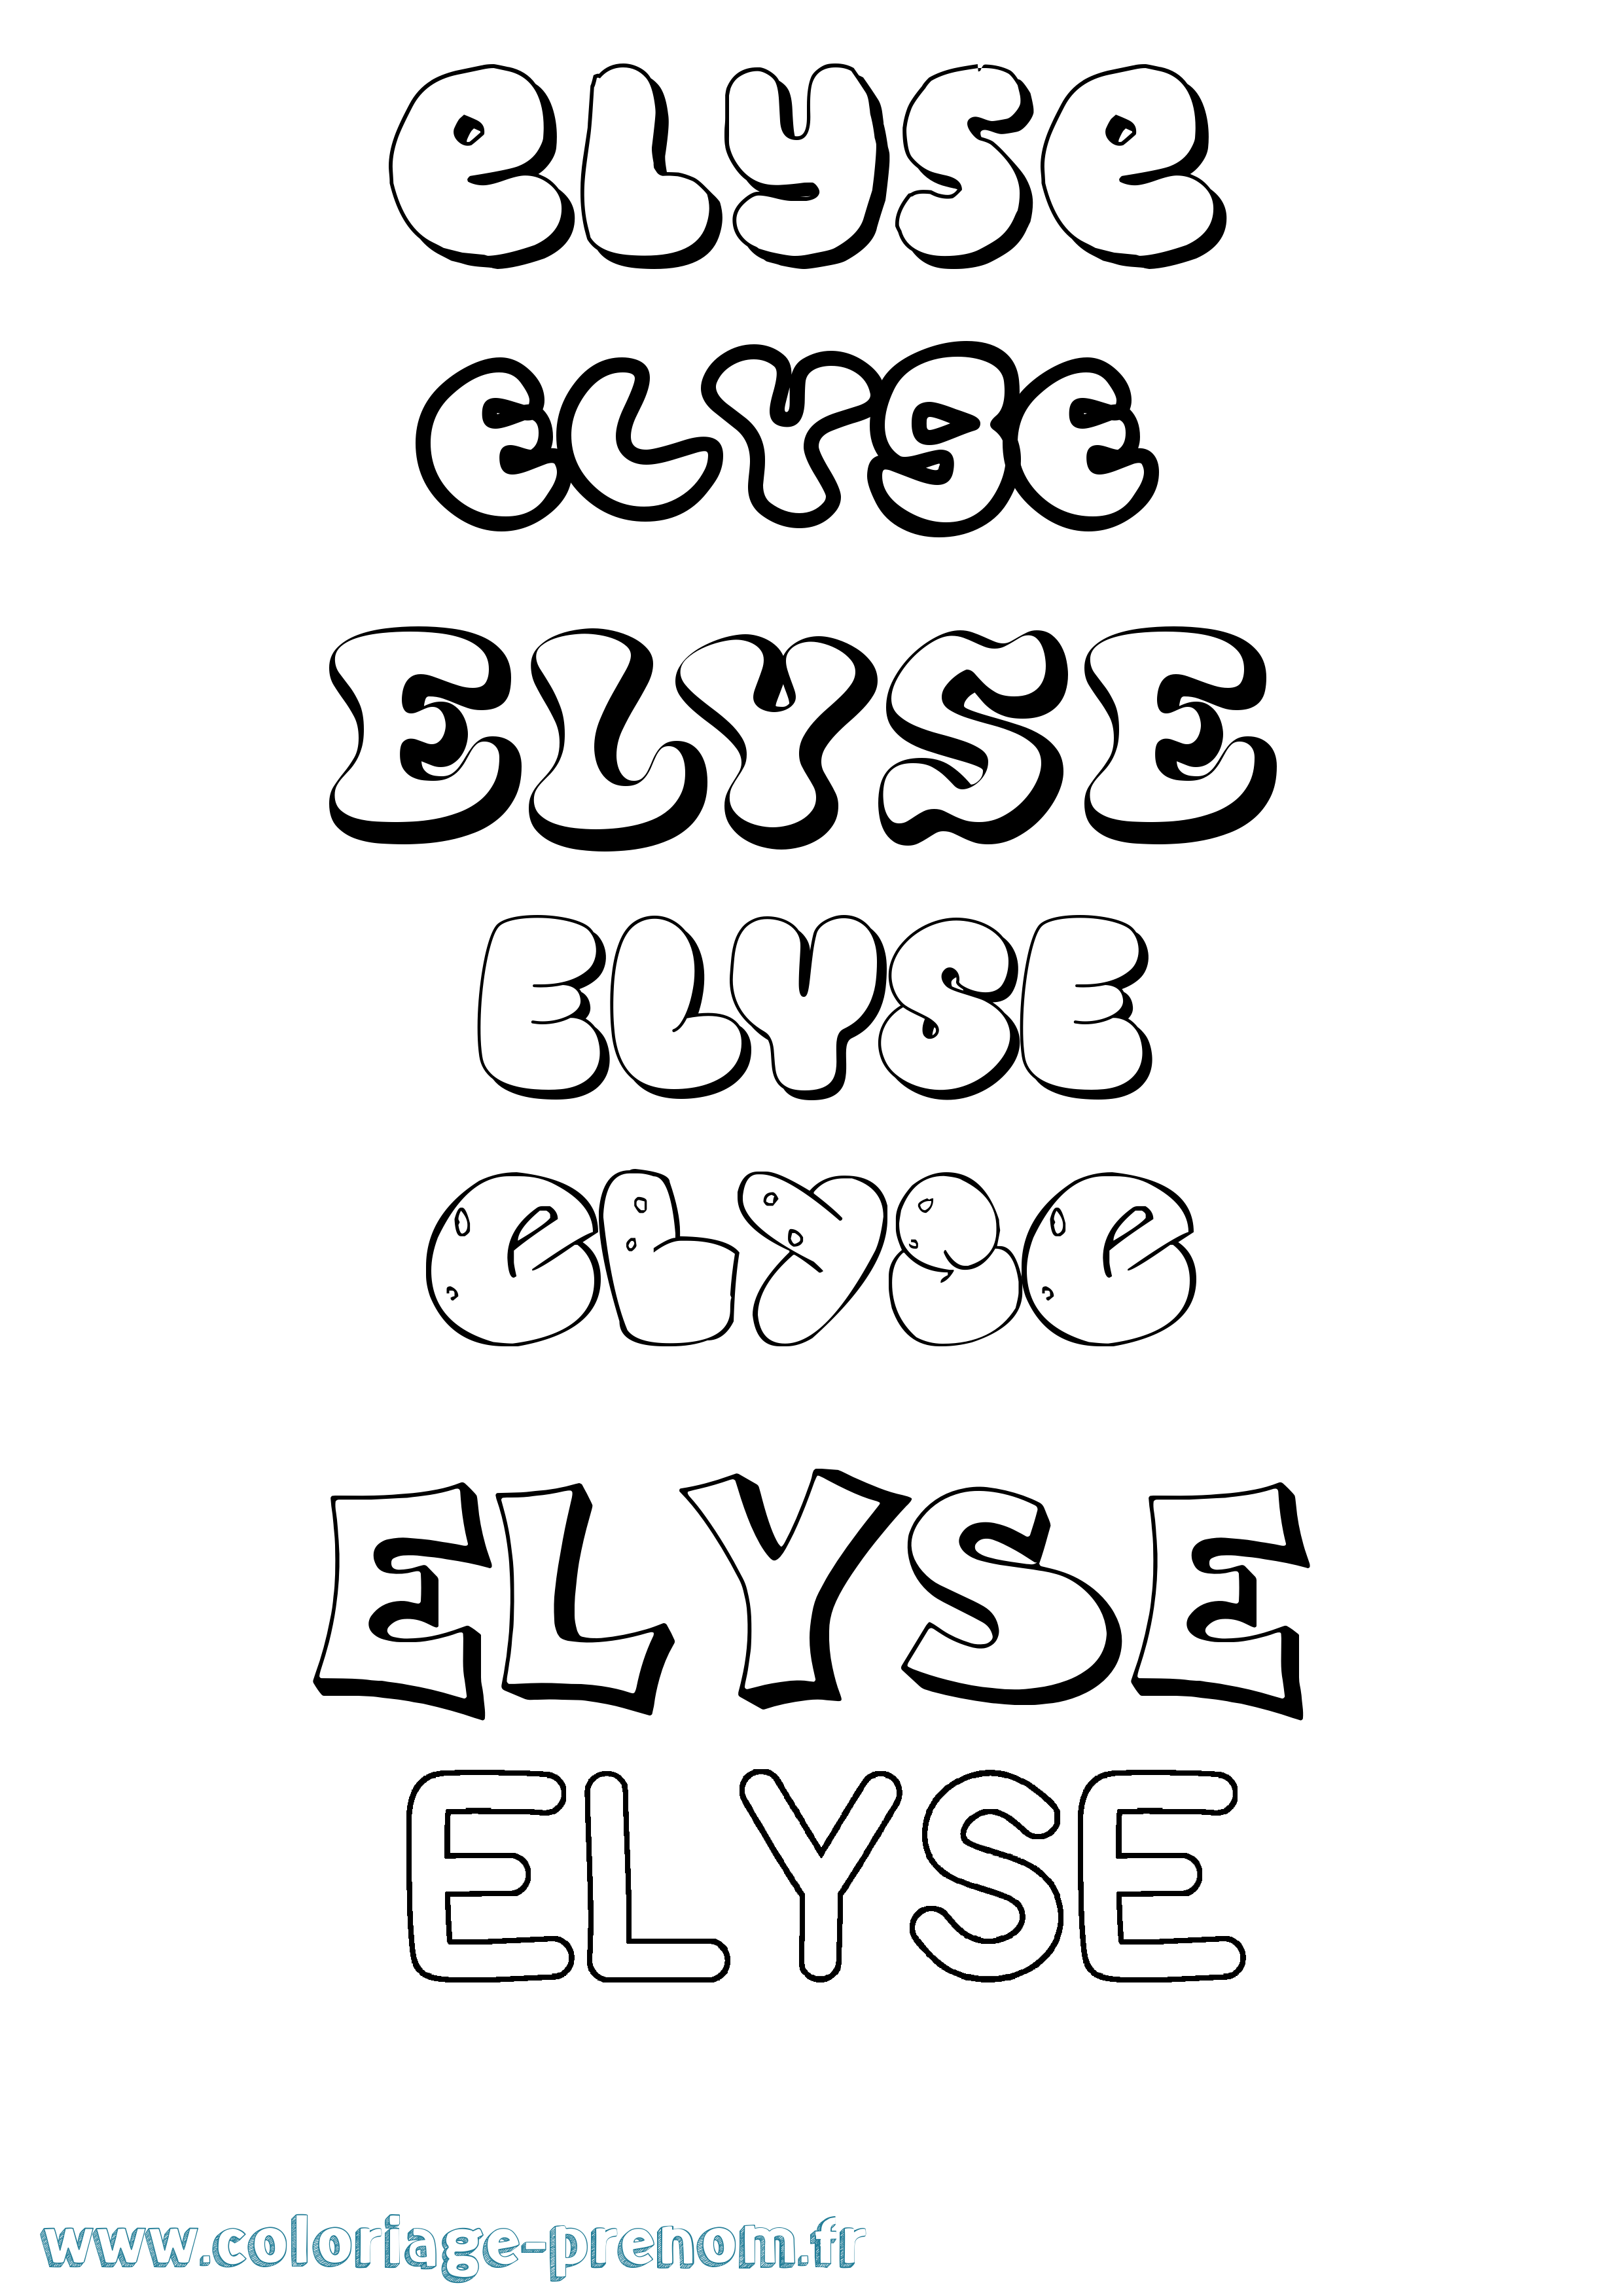 Coloriage prénom Elyse Bubble